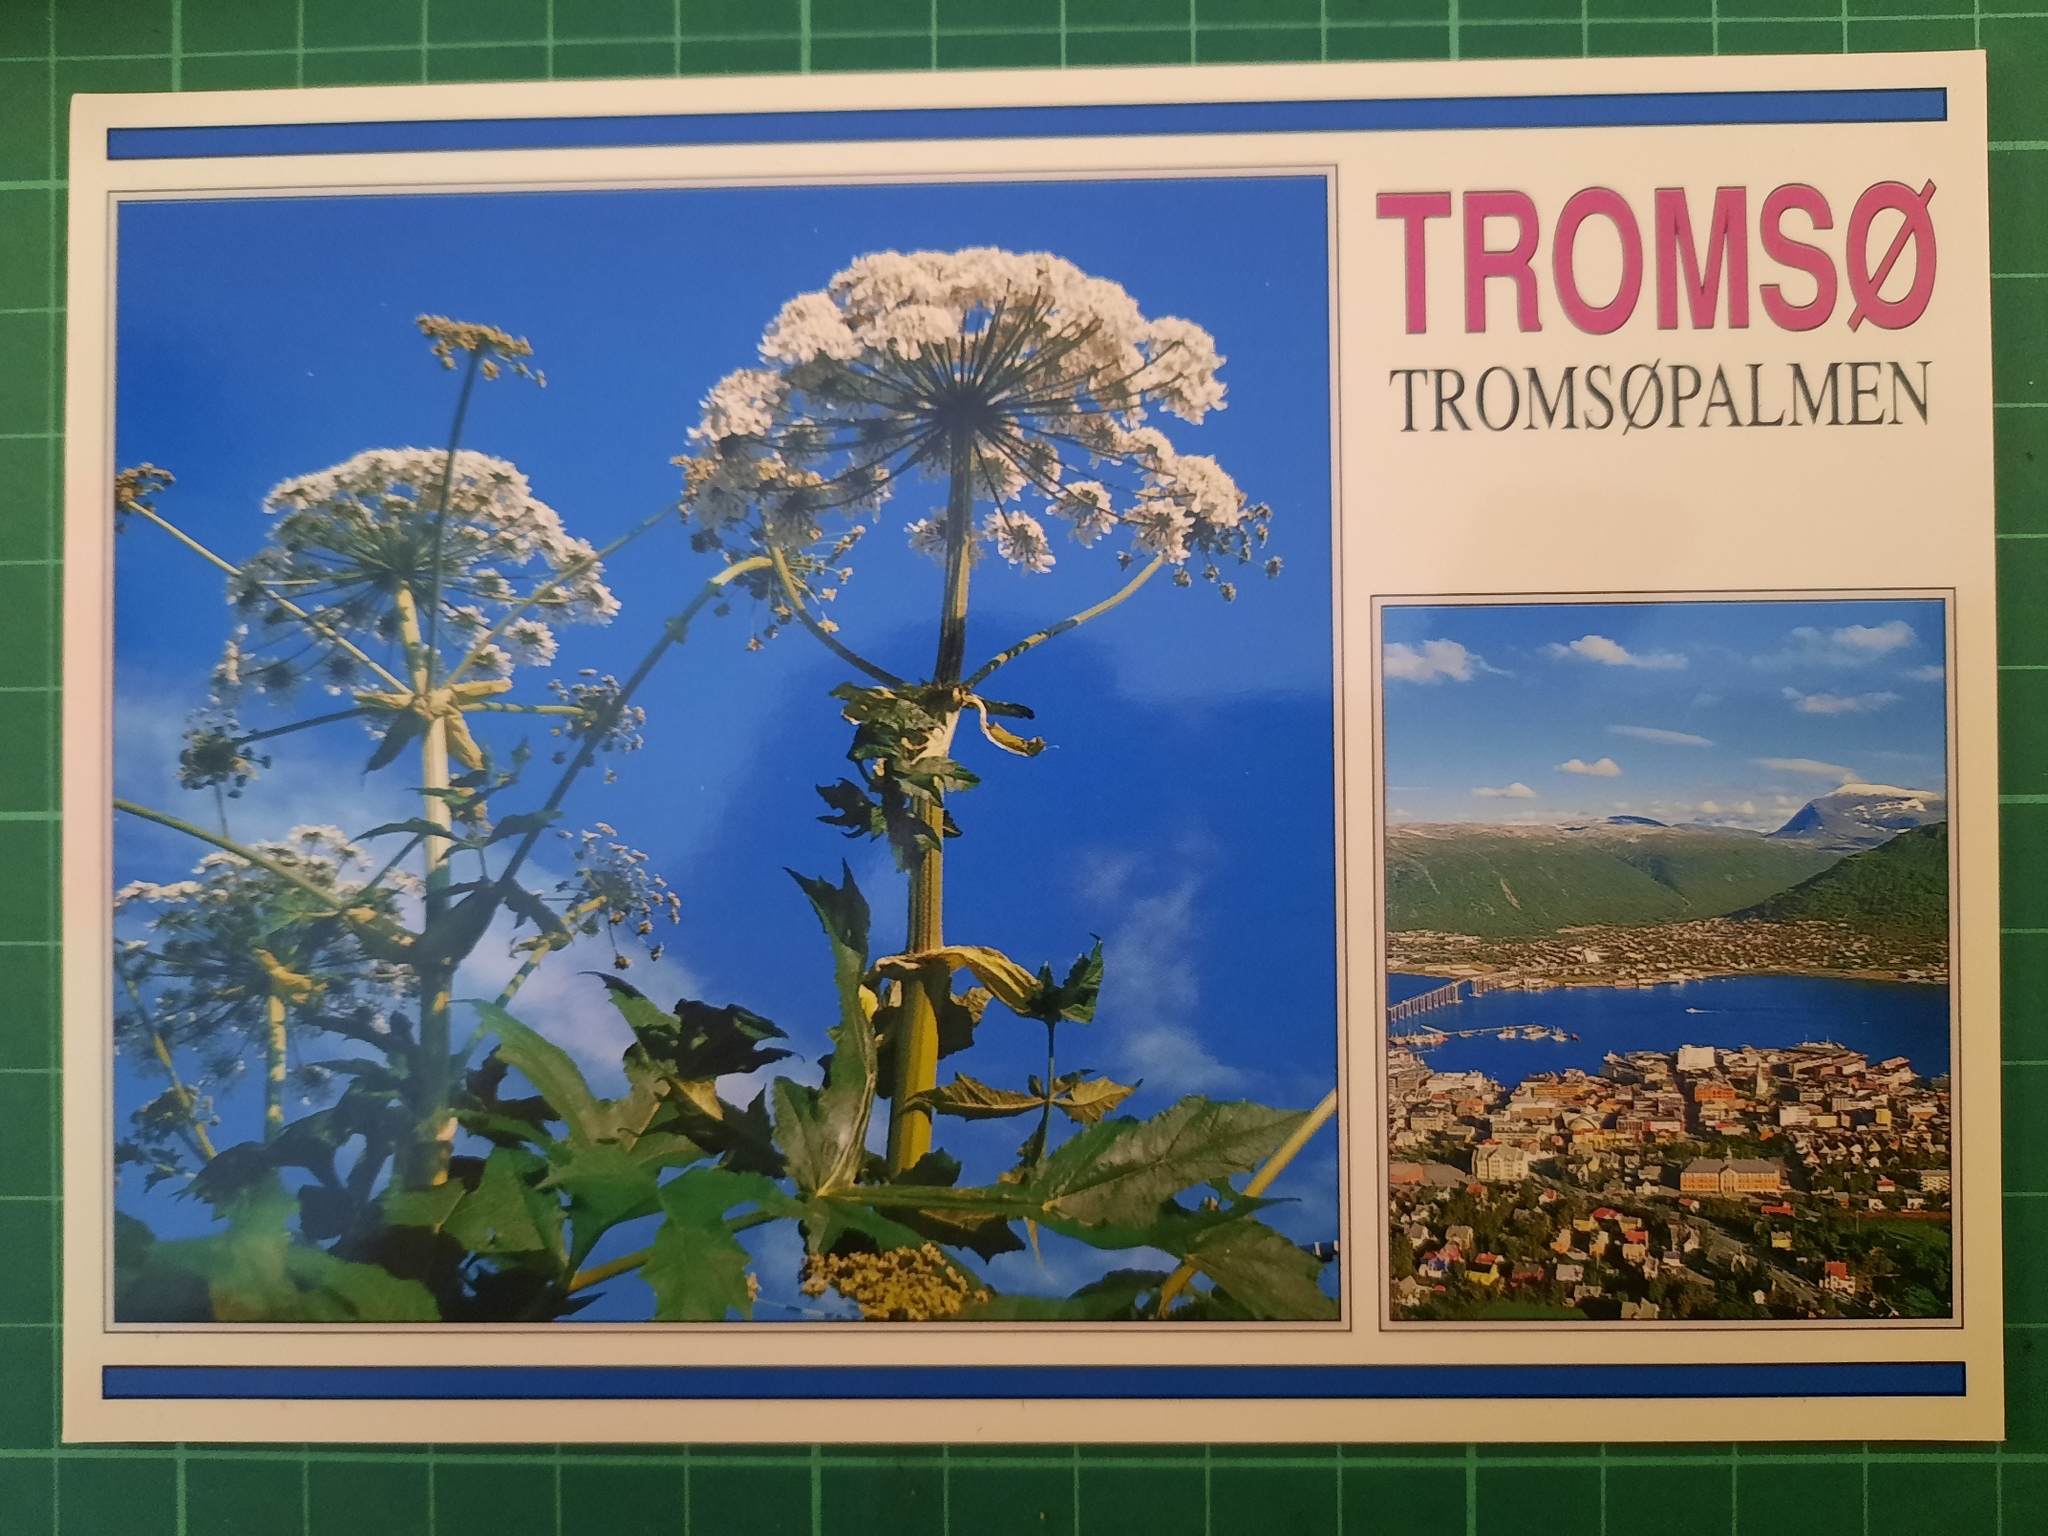 Tromsø - Tromsøpalmen